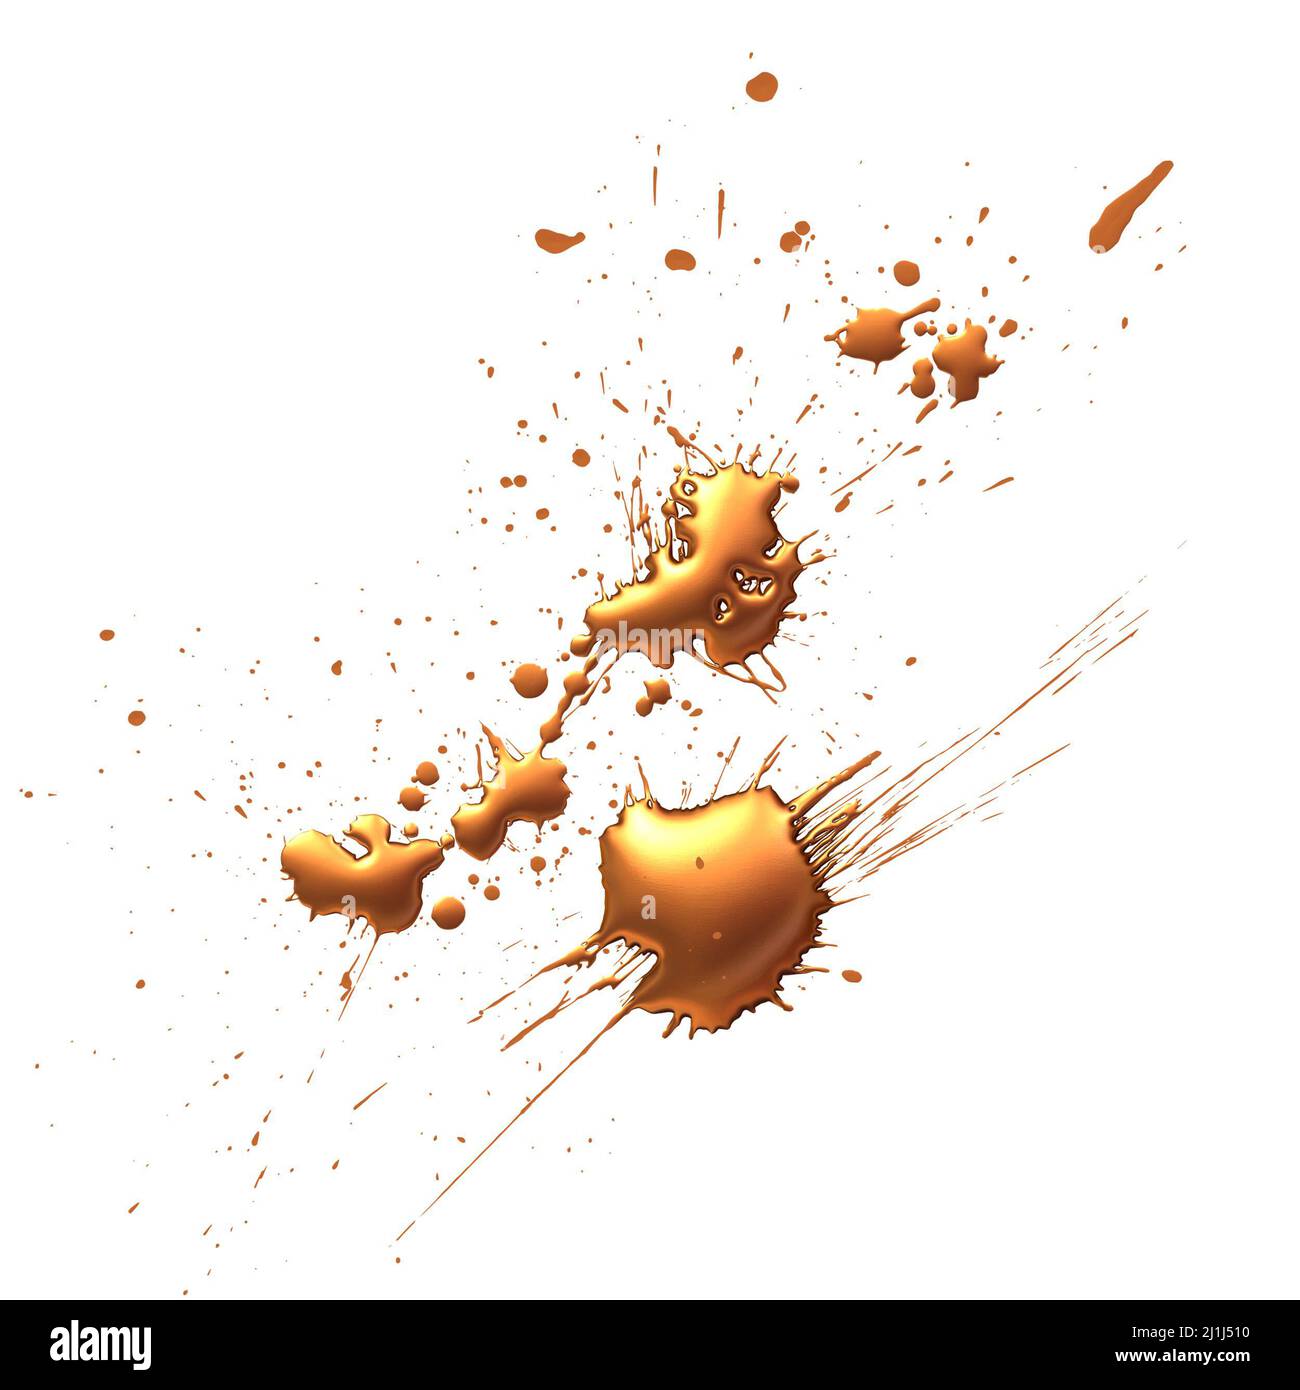 tache d'encre jaune, or liquide, illustration 3d sur fond blanc Banque D'Images